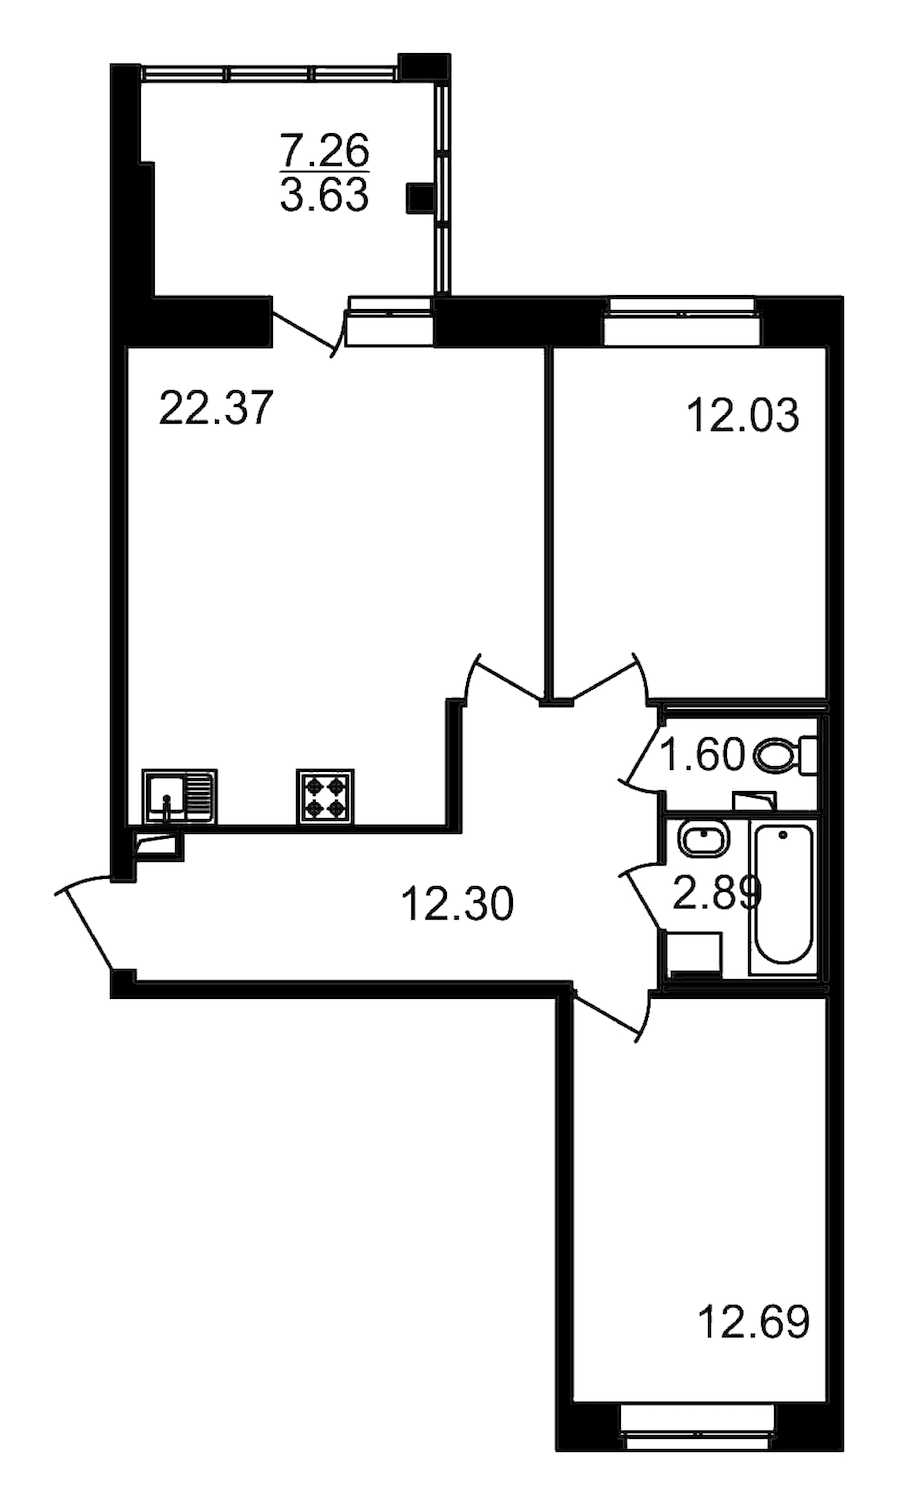 Двухкомнатная квартира в : площадь 71.14 м2 , этаж: 2 – купить в Санкт-Петербурге